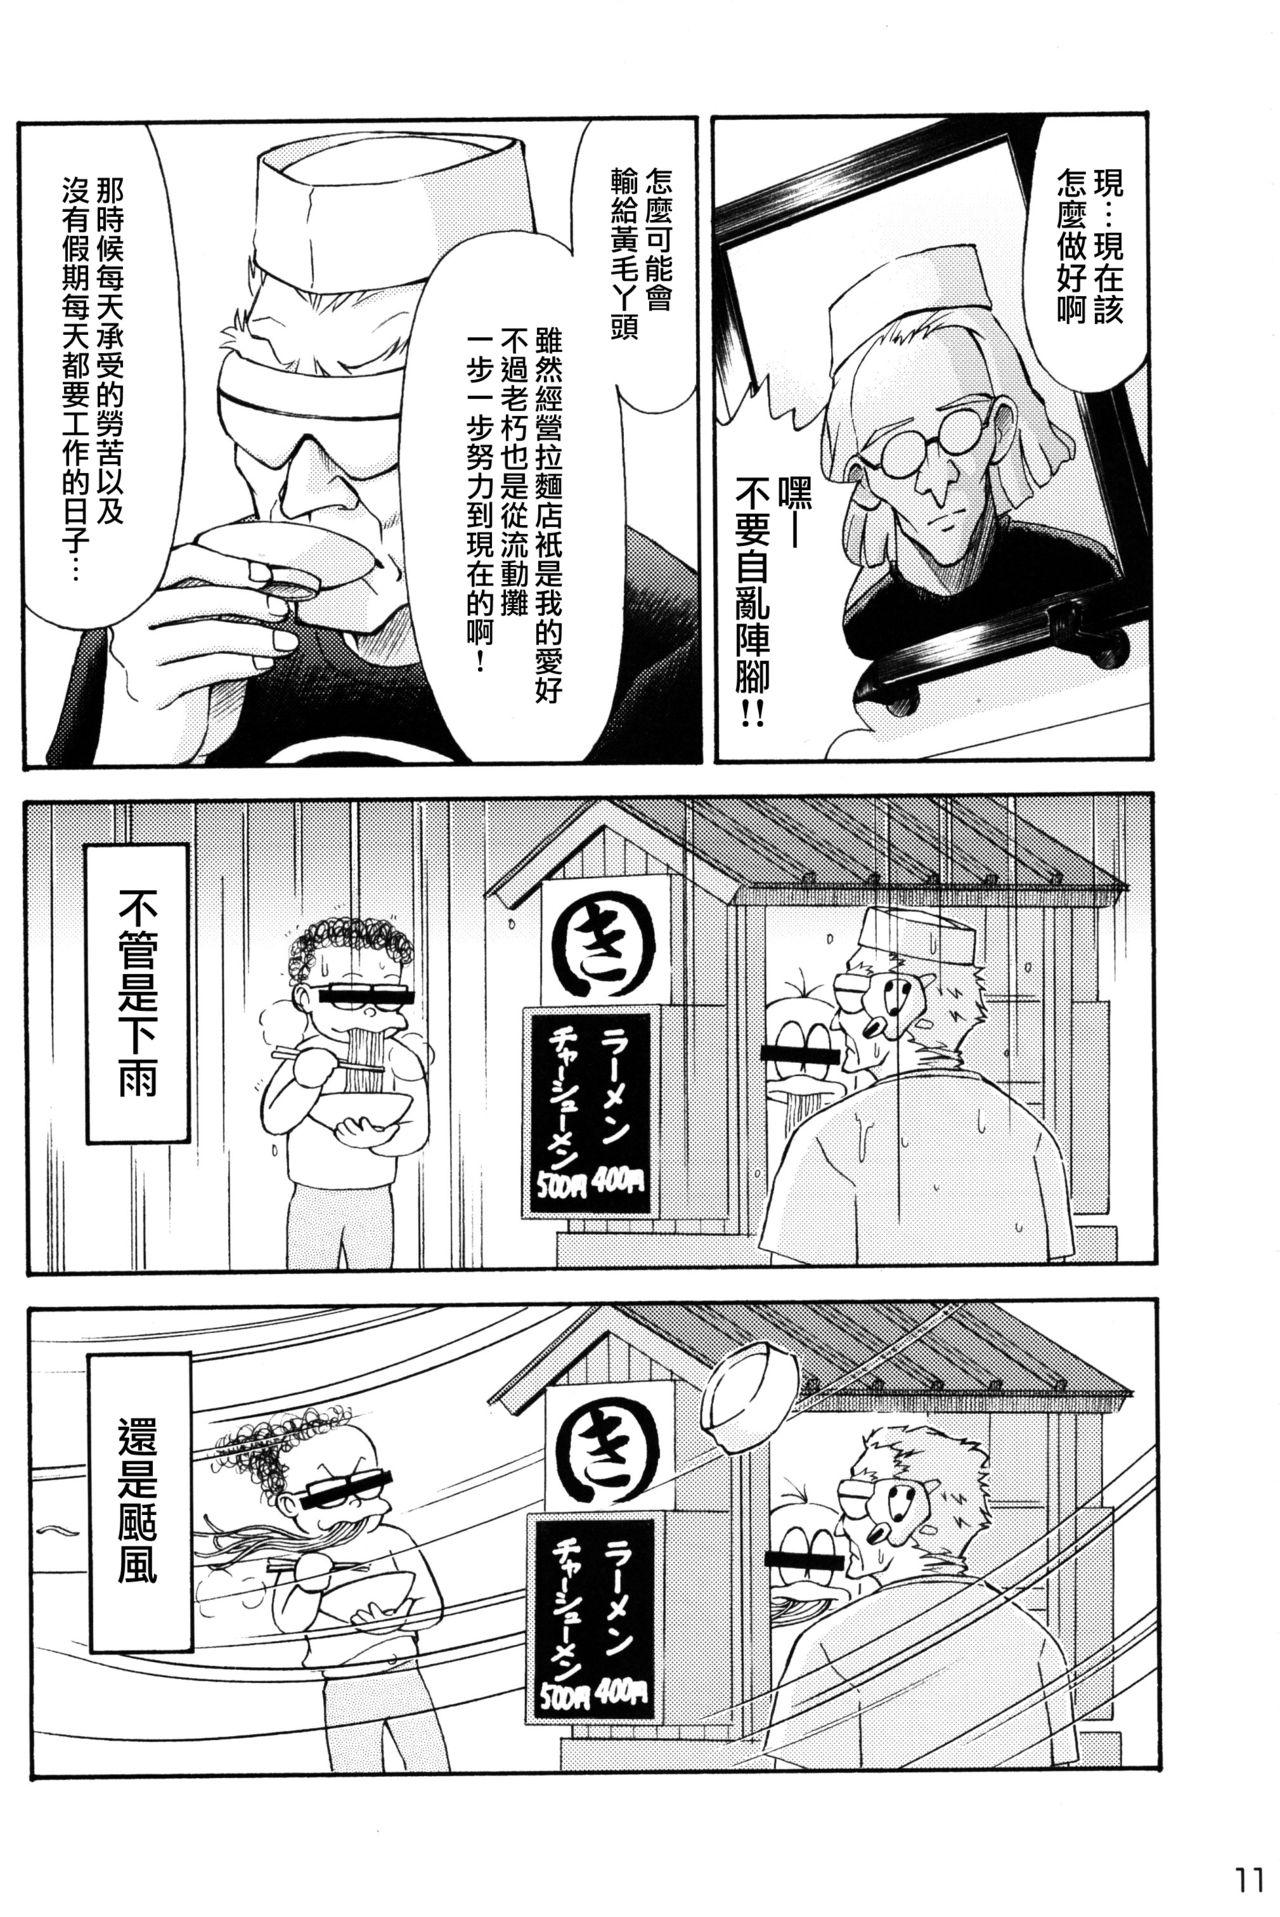 Stranger Asuka Trial 2 - Neon genesis evangelion Gay Uncut - Page 10